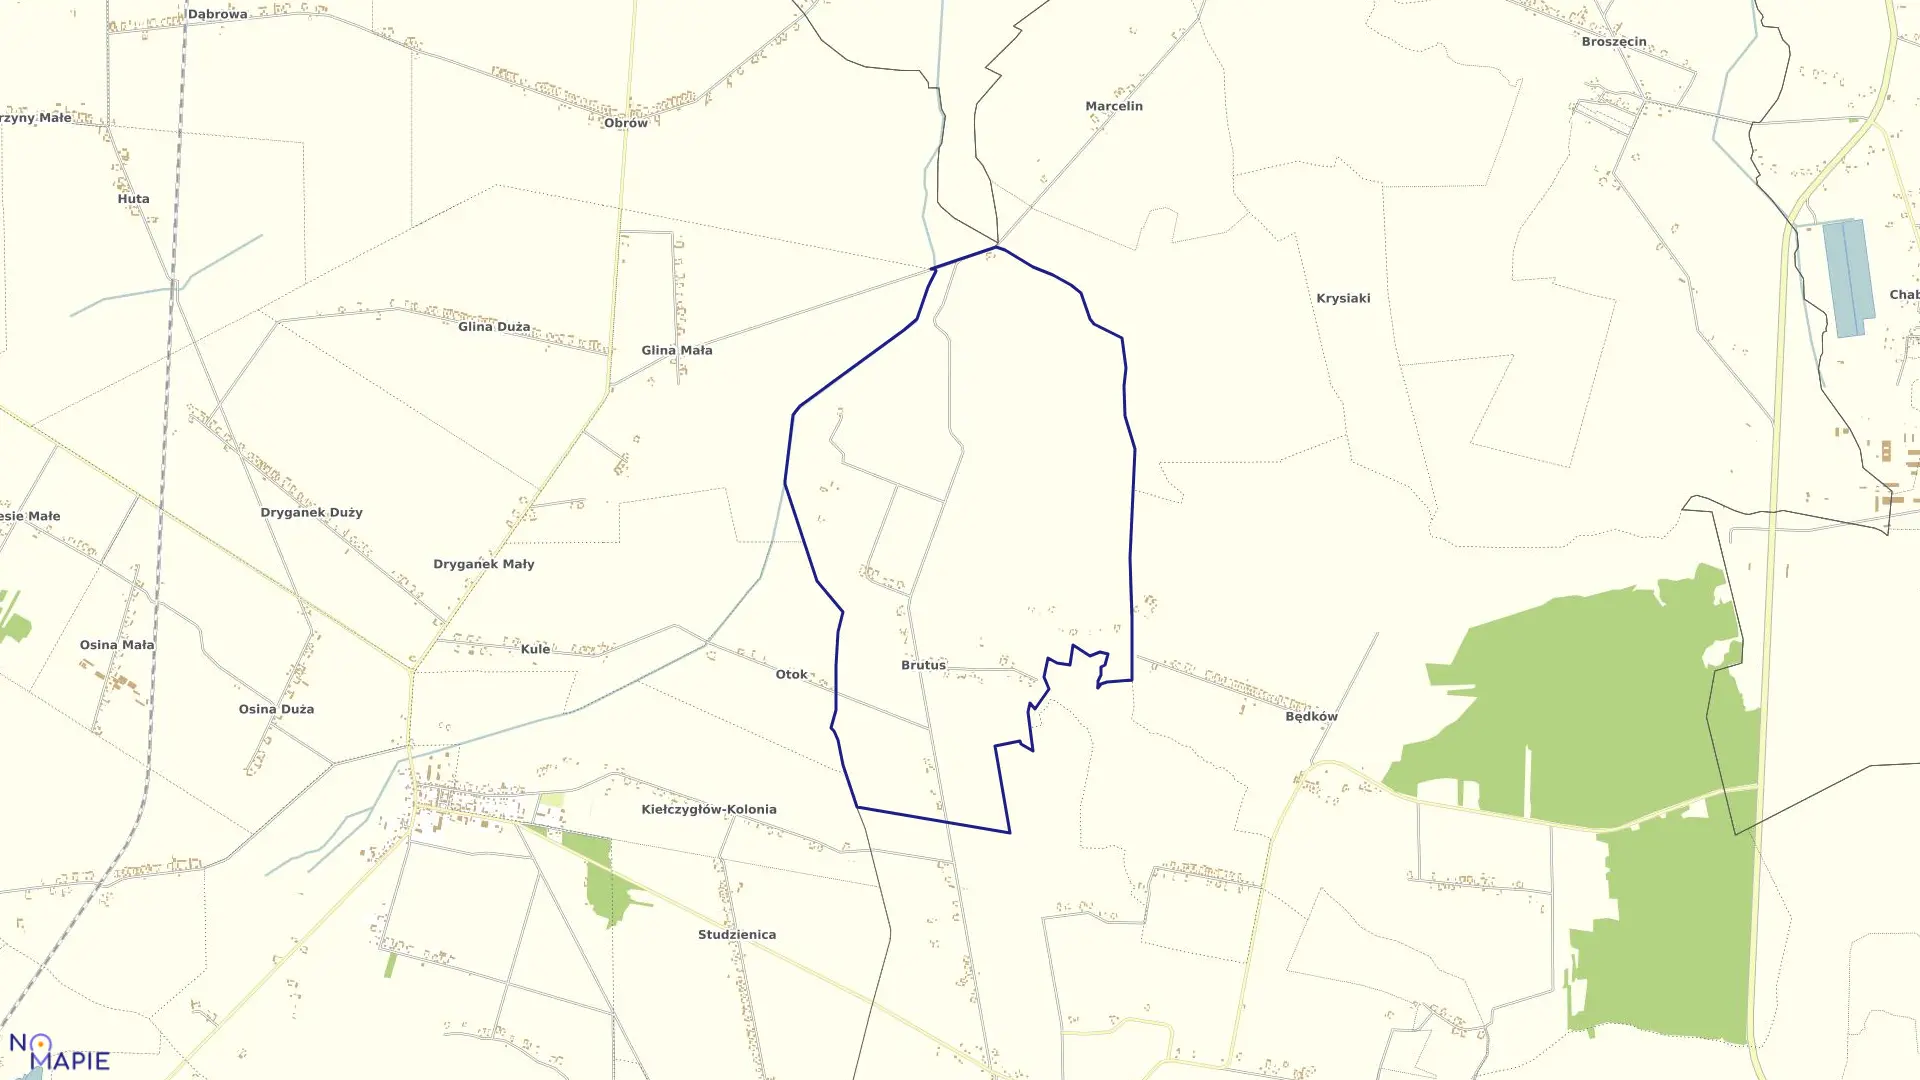 Mapa obrębu BRUTUS w gminie Kiełczygłów